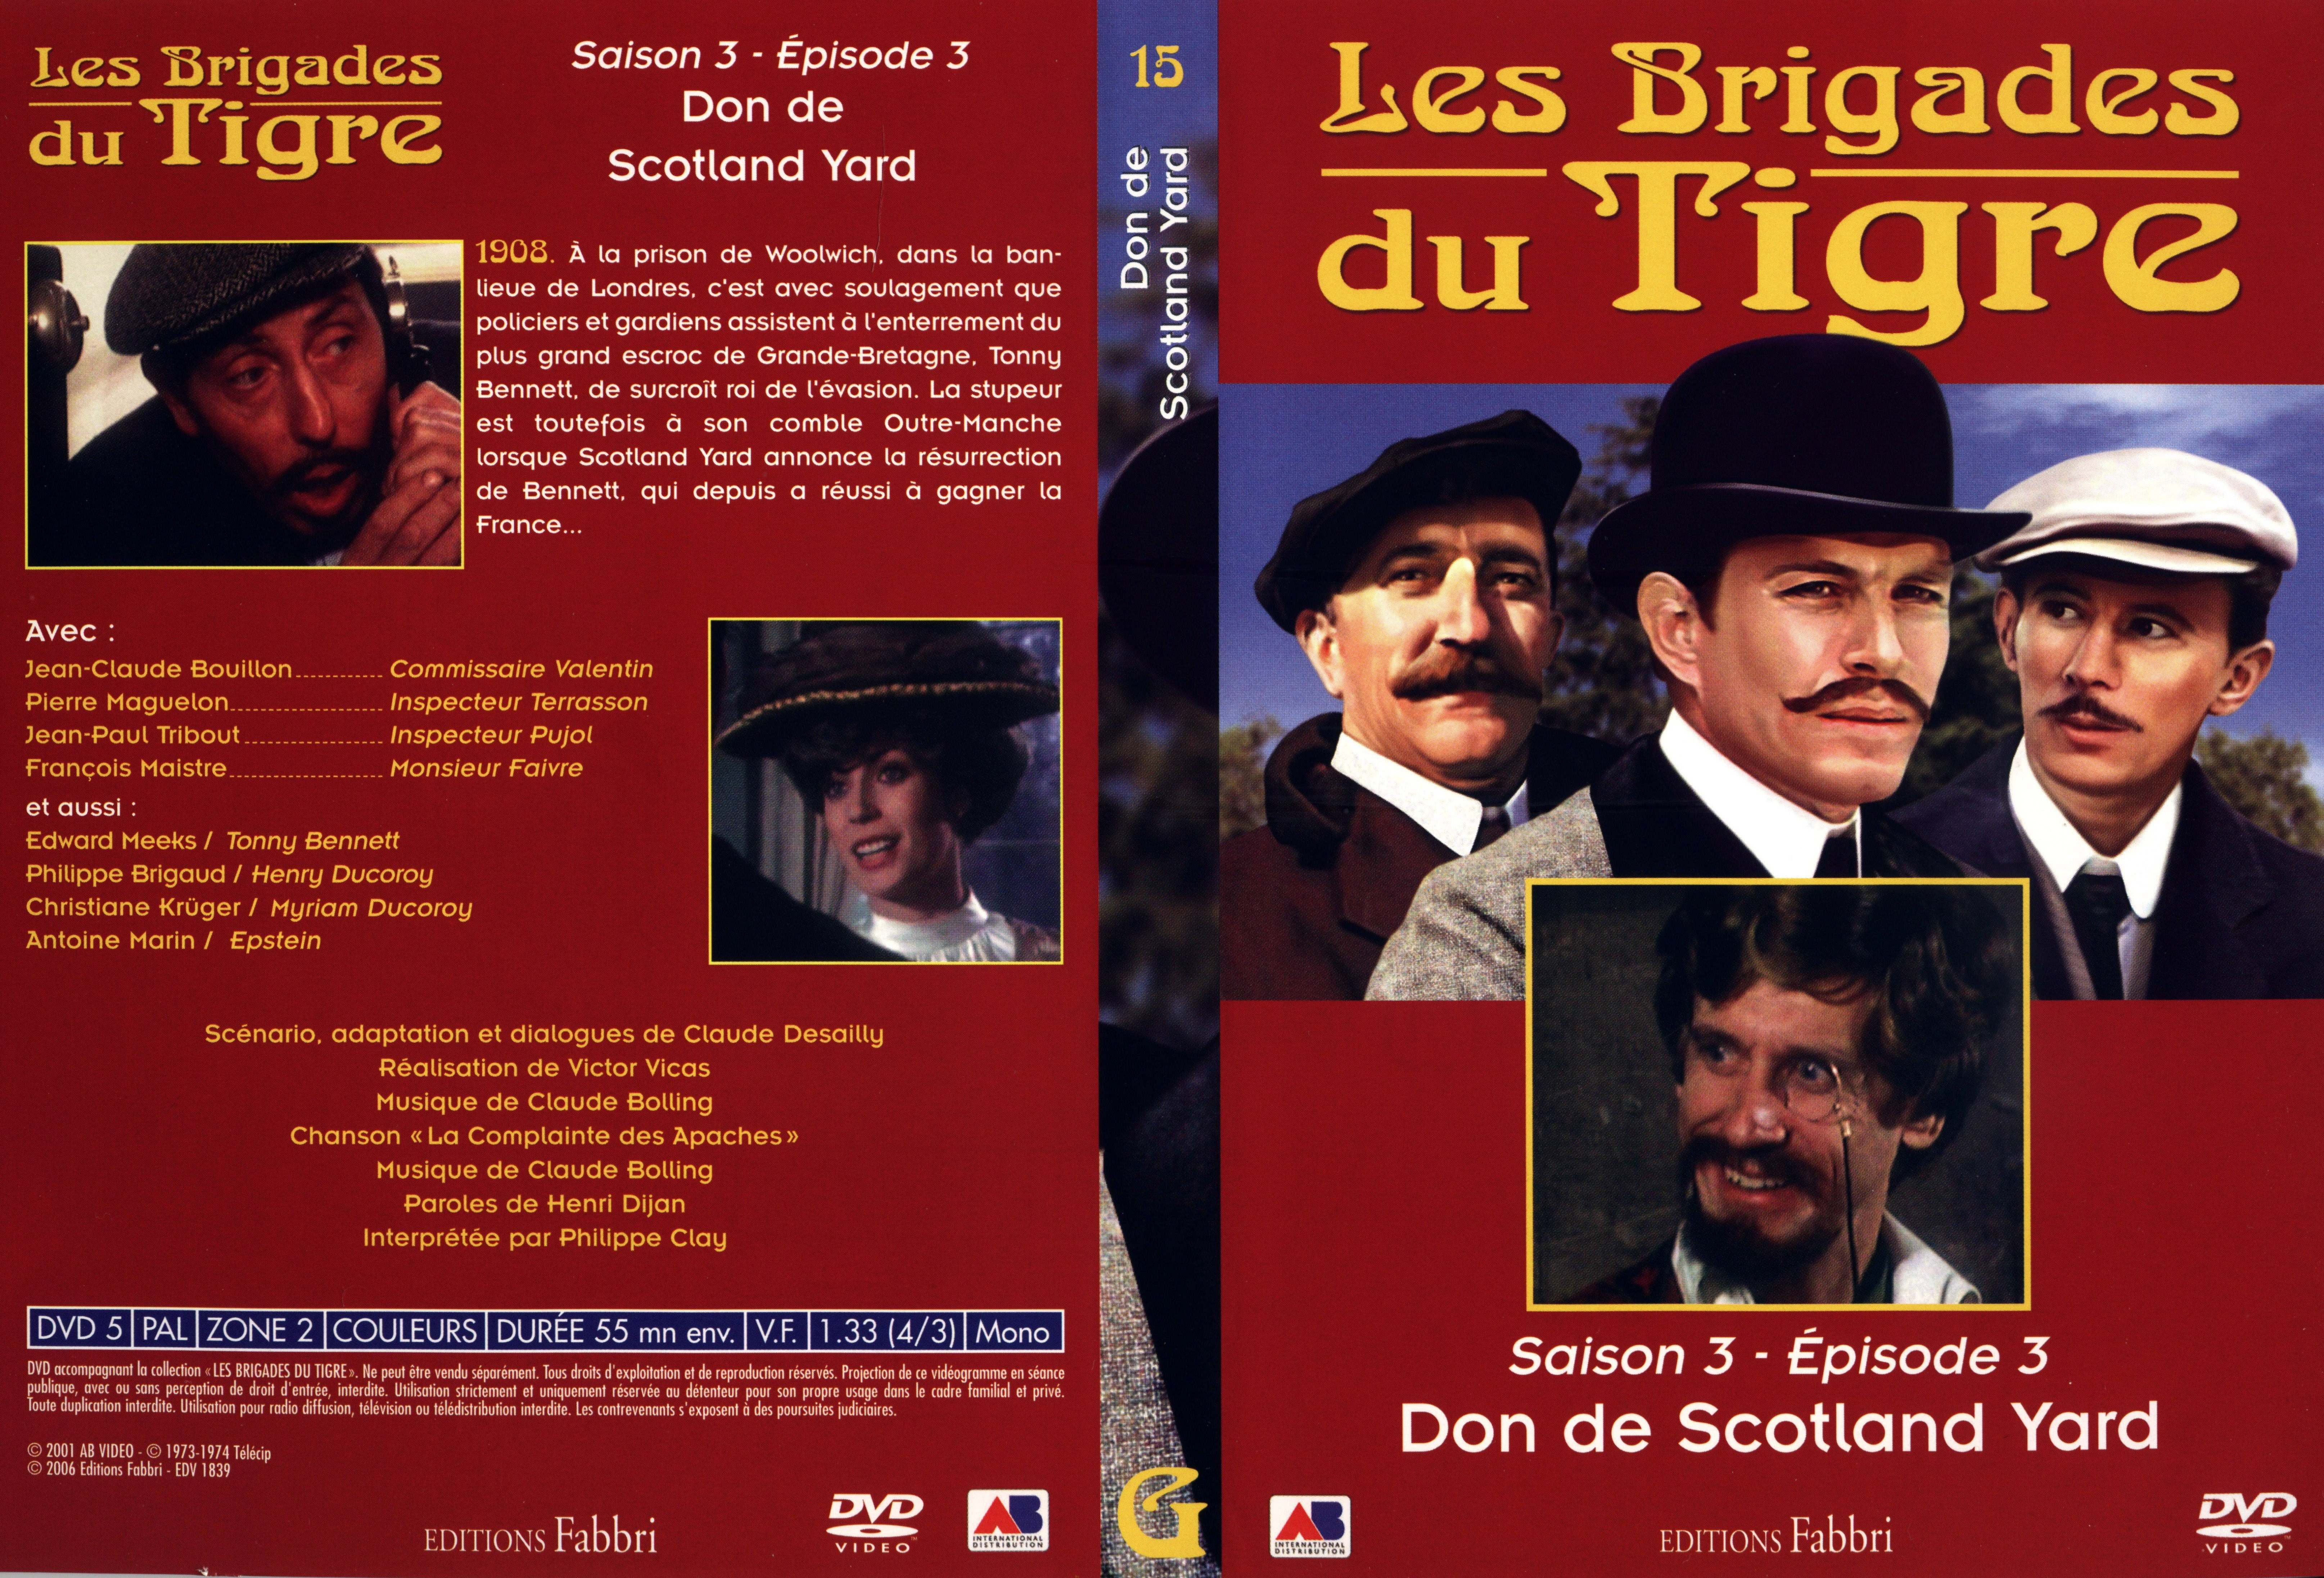 Jaquette DVD Les brigades du tigre saison 3 pisode 3